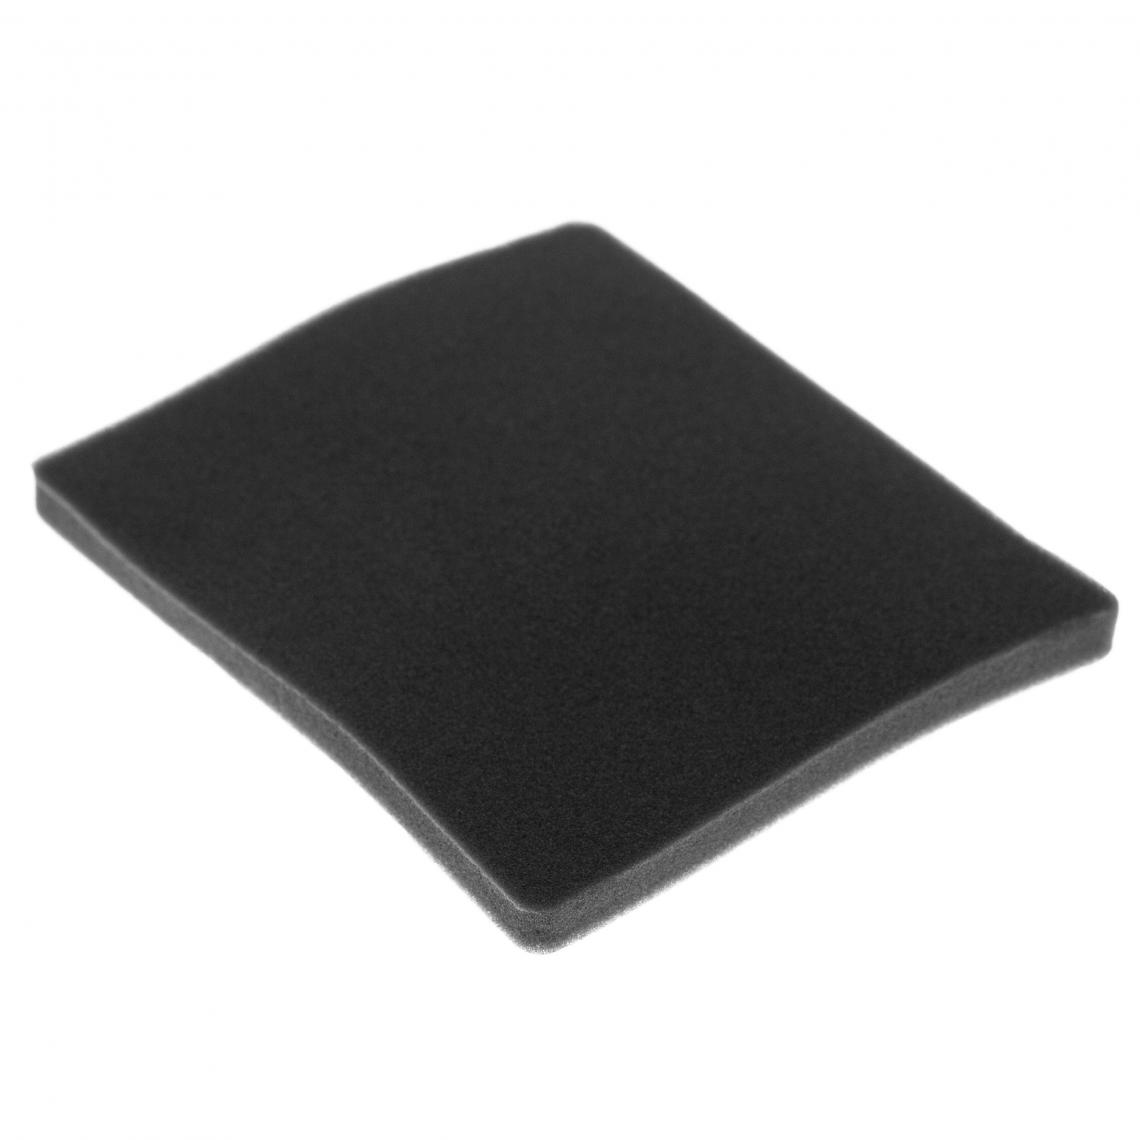 Vhbw - vhbw Filtre compatible avec Electrolux EL4103A (903151092) aspirateur - filtre de sortie d'air (filtre éponge), noir - Accessoire entretien des sols